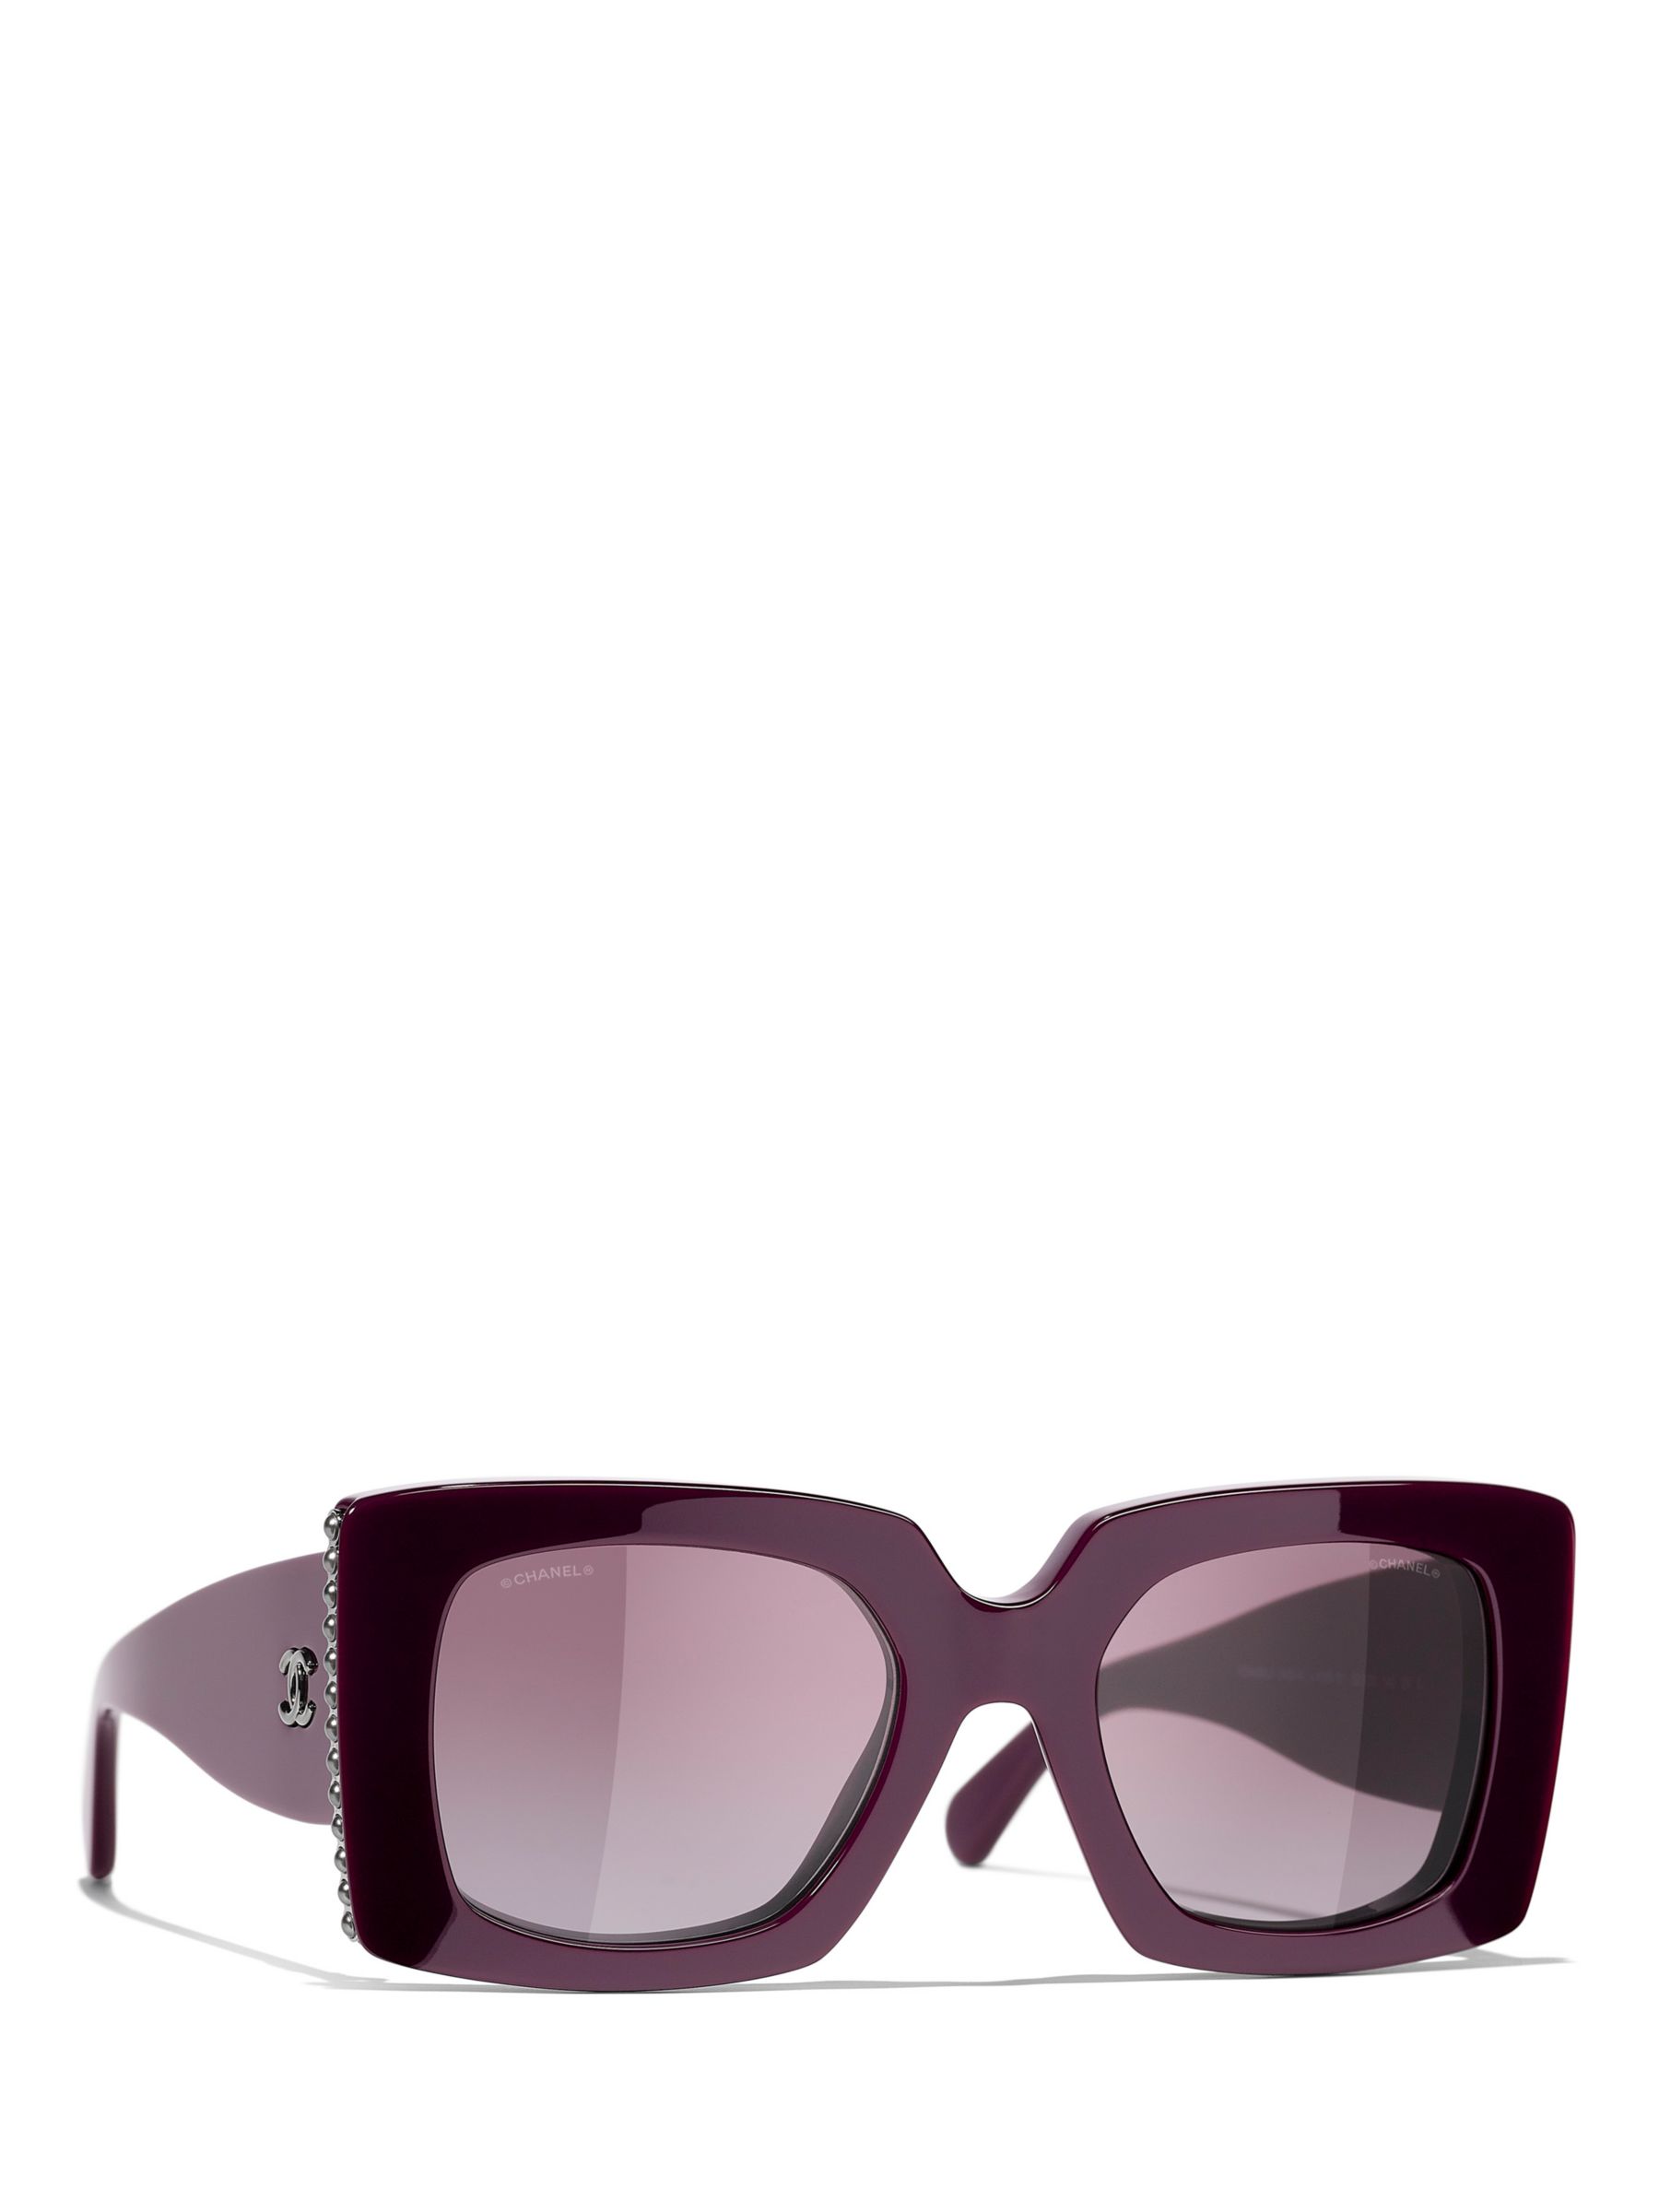 Chanel 2013 Bow Sunglasses Purple Violet Square Gradient 5171 c.1083/3P  251122